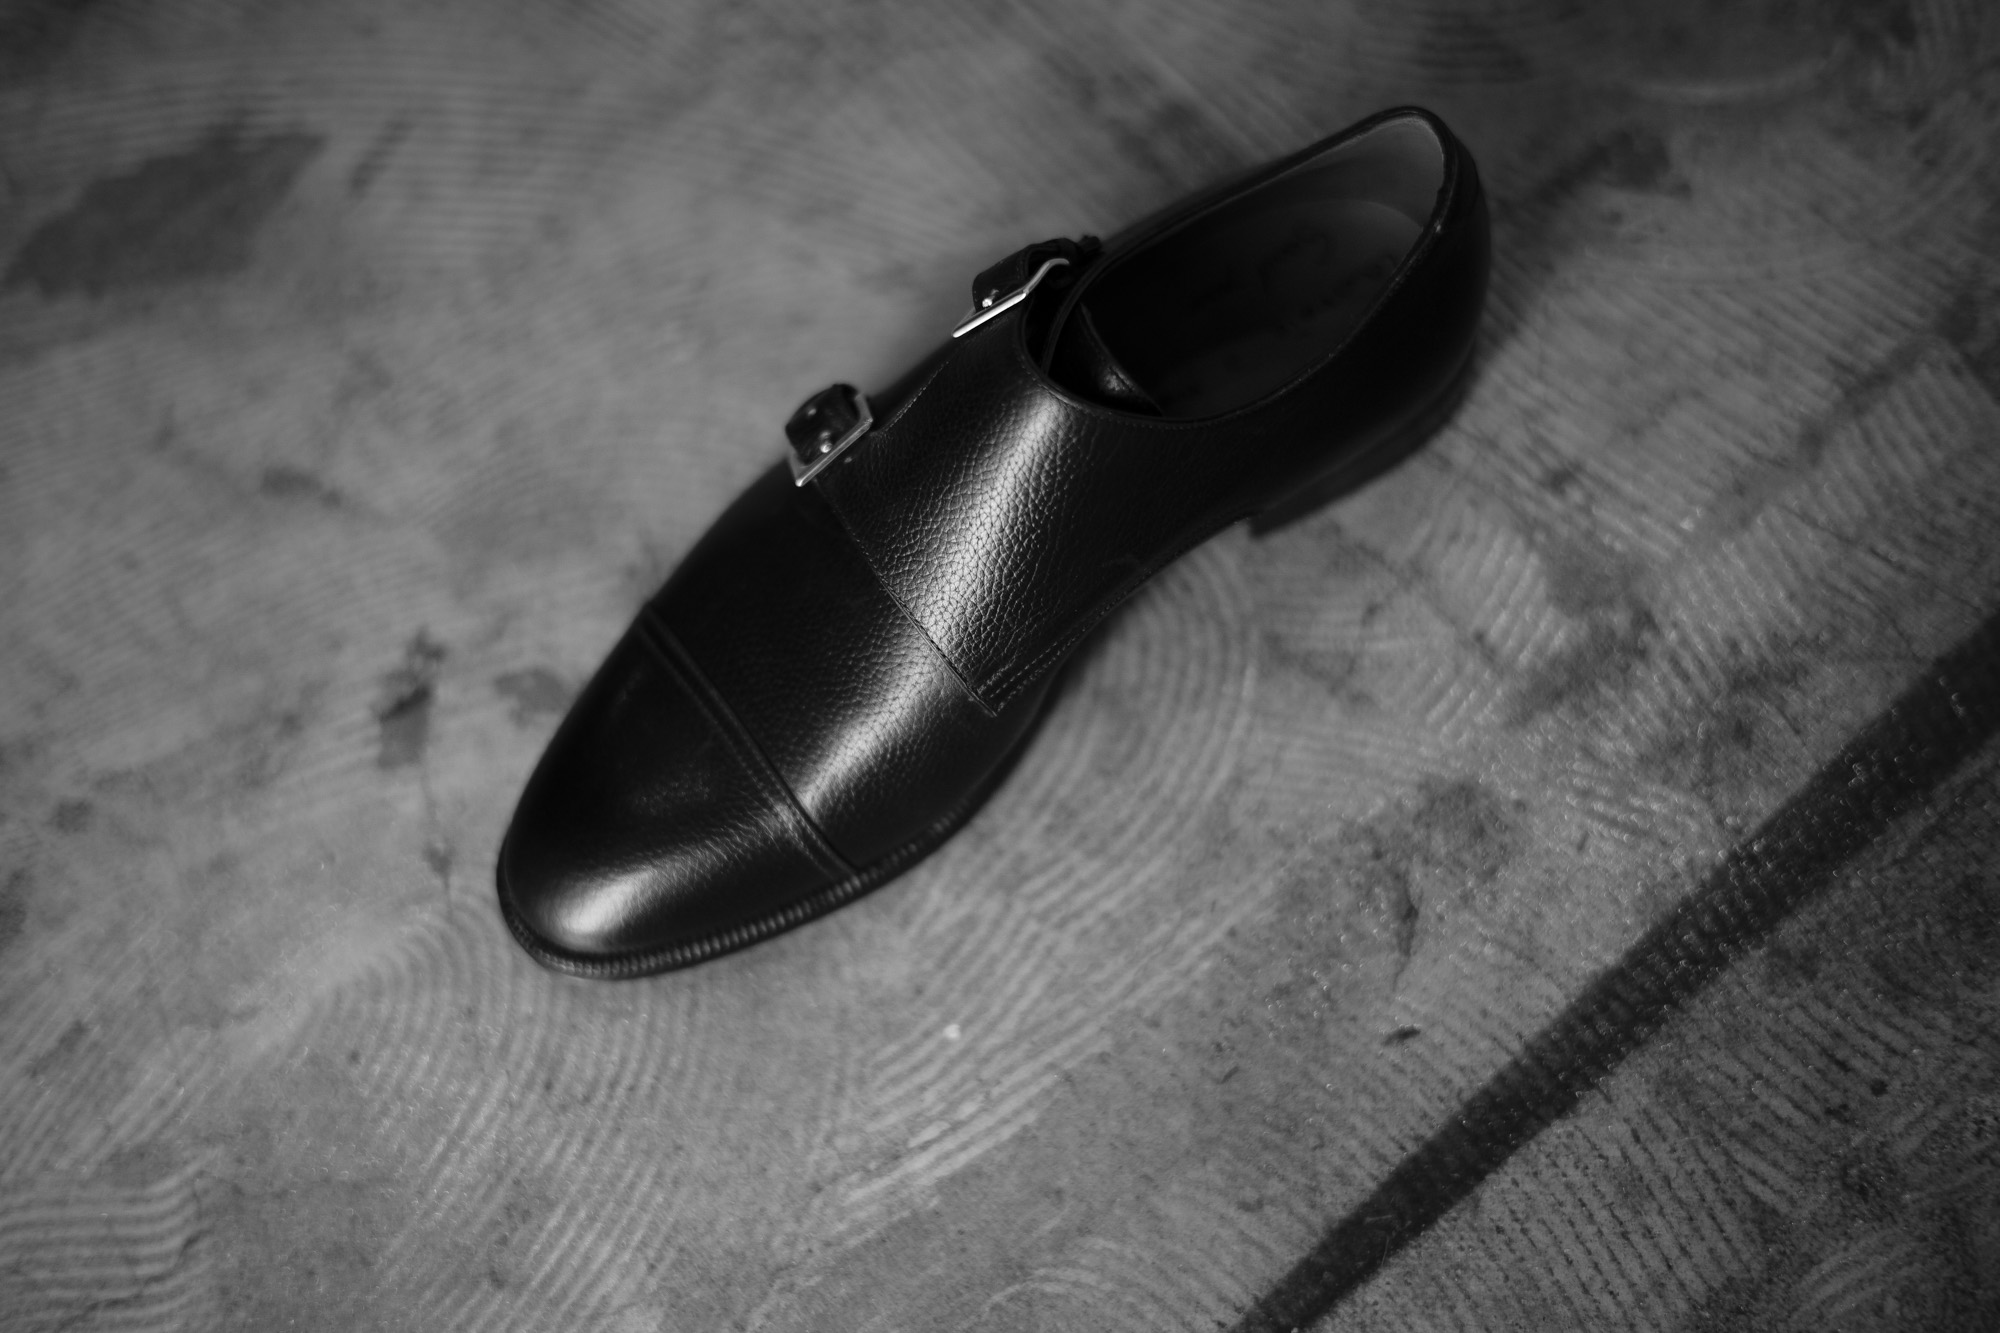 ENZO BONAFE(エンツォボナフェ) 【ART.EB-27】Double Monk Strap Shoes Horween Shell Cordovan leather ホーウィンシェルコードバン ダブルモンクストラップシューズ BOURBON(バーボン) made in italy(イタリア製) 2018 春夏 enzobonafe エンツォボナフェ doublemonk ダブルモンク レアカラー コードヴァン バーボン bourbon 愛知 名古屋 Alto e Diritto アルト エ デリット